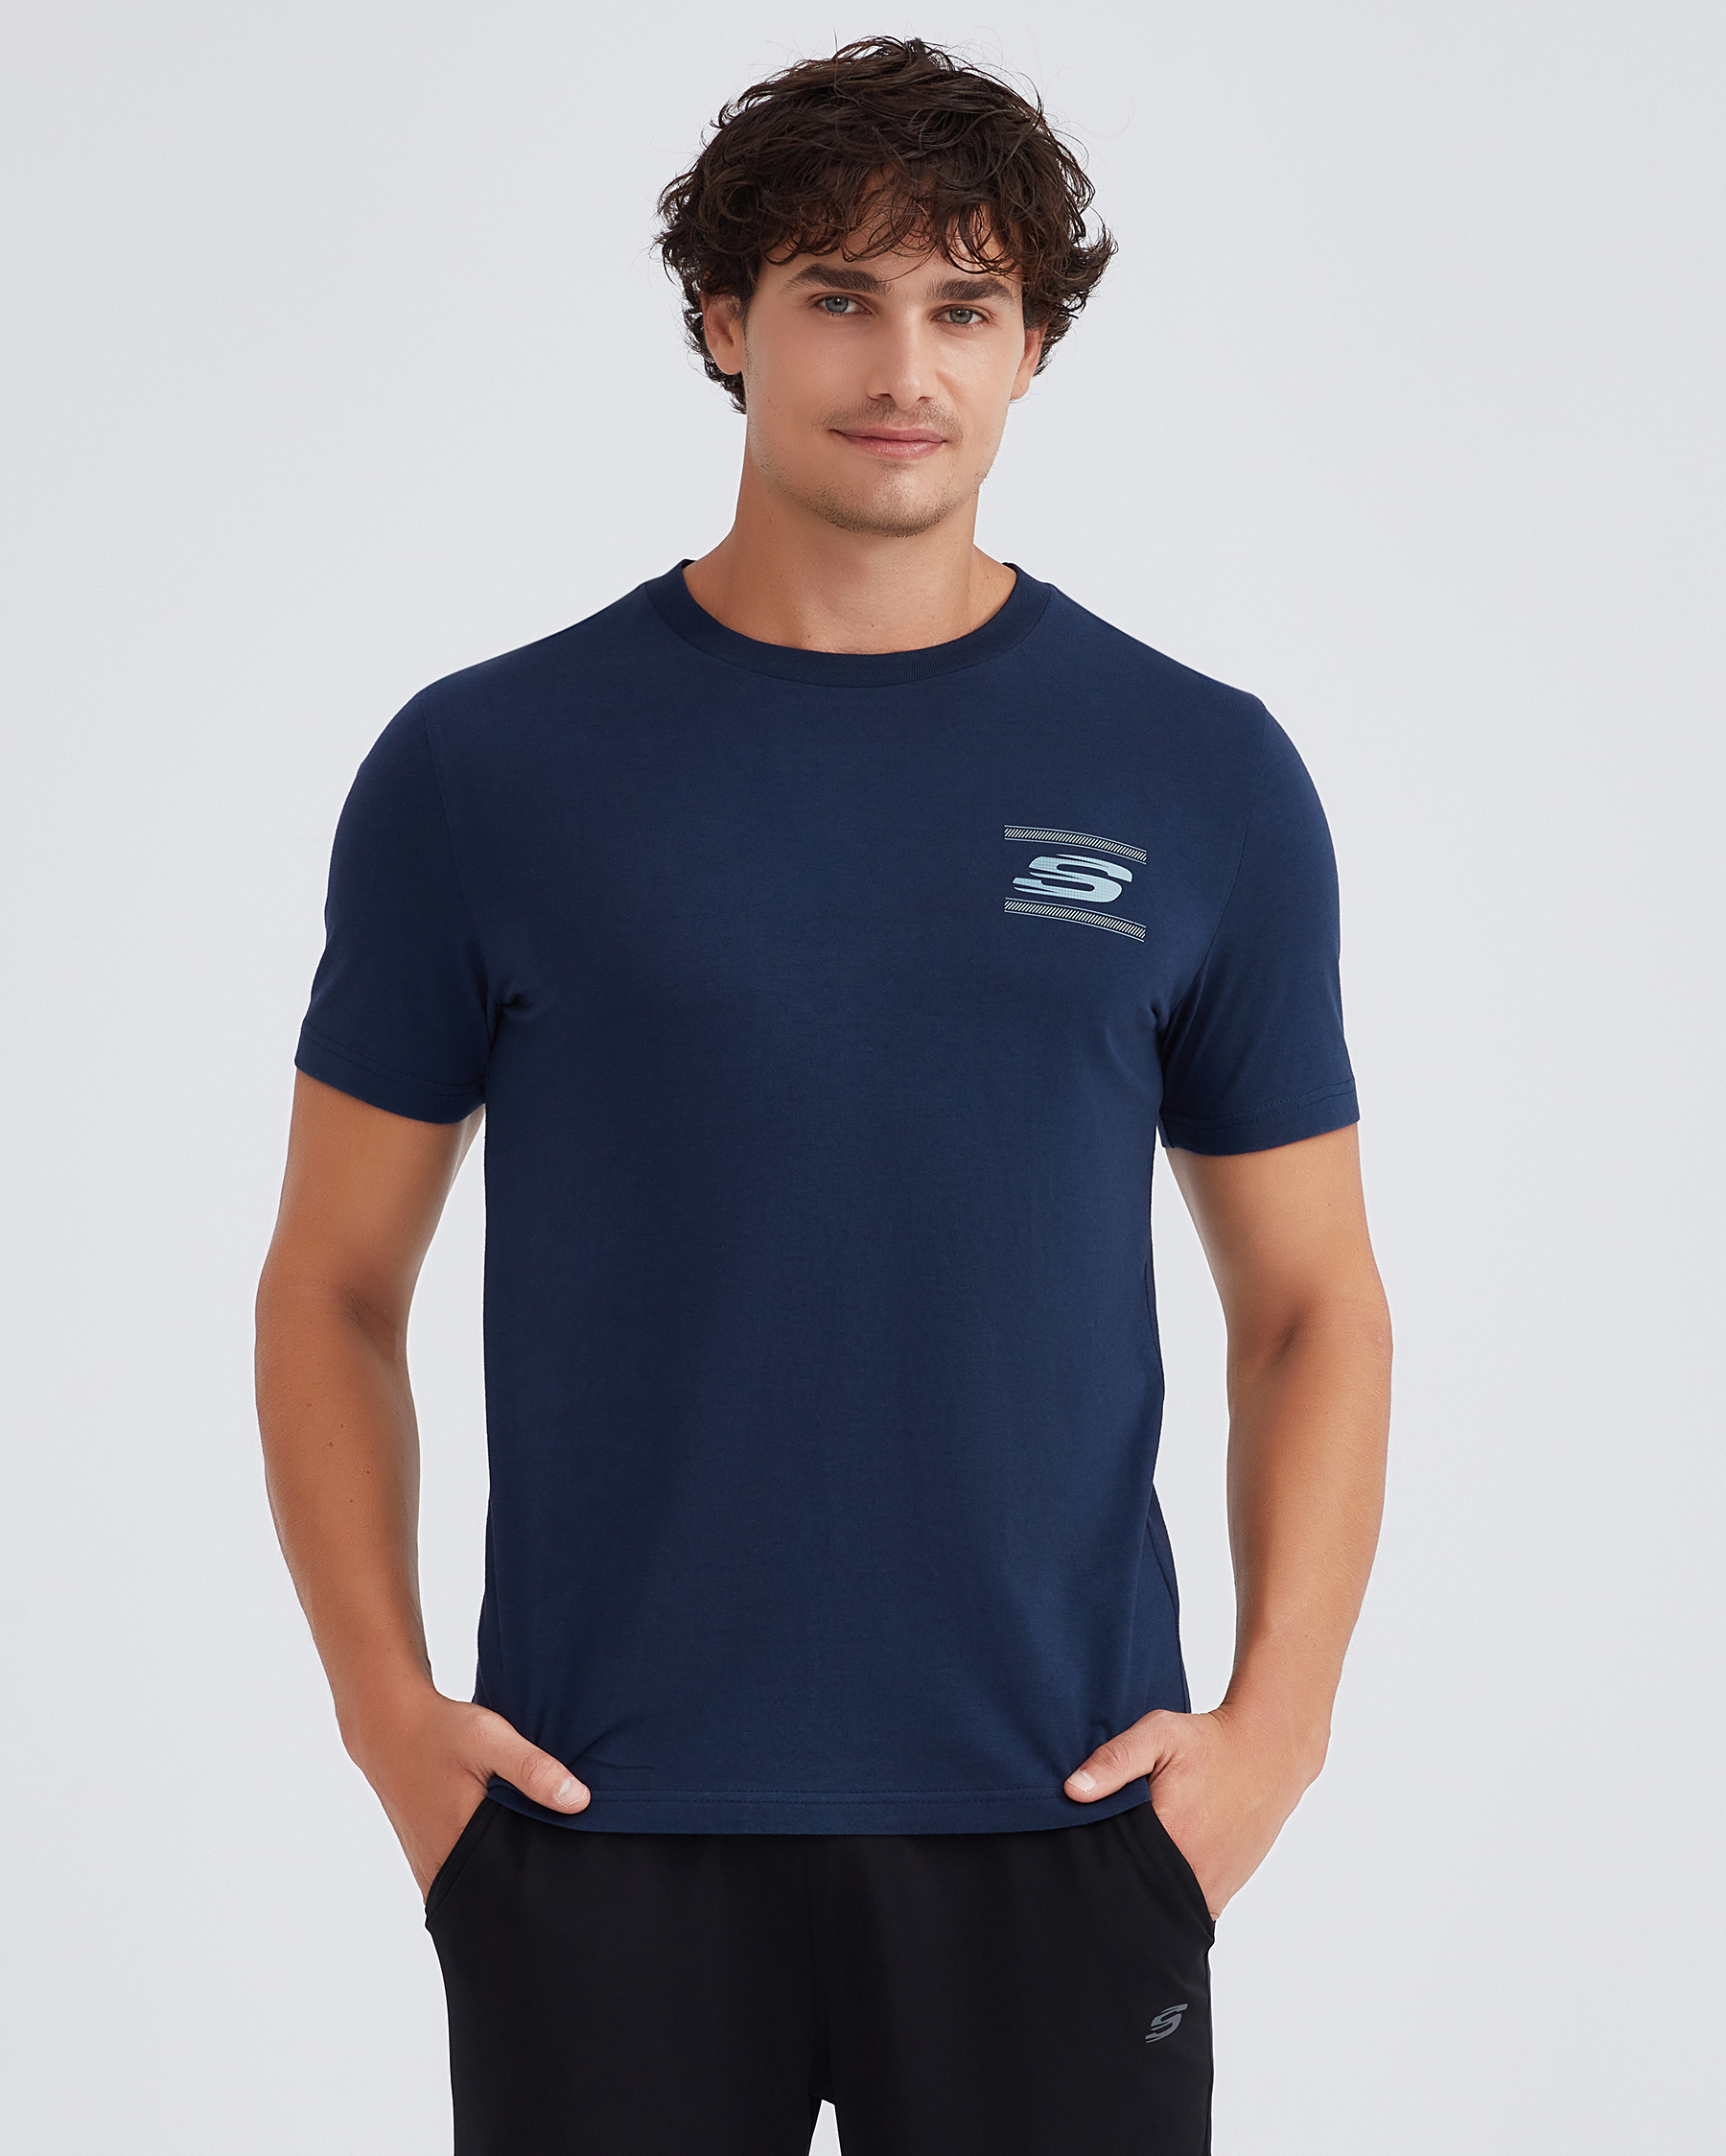 Skechers M Graphic Erkek T-shirt S232339-410 Crew Tee Lacivert Tshirt Neck